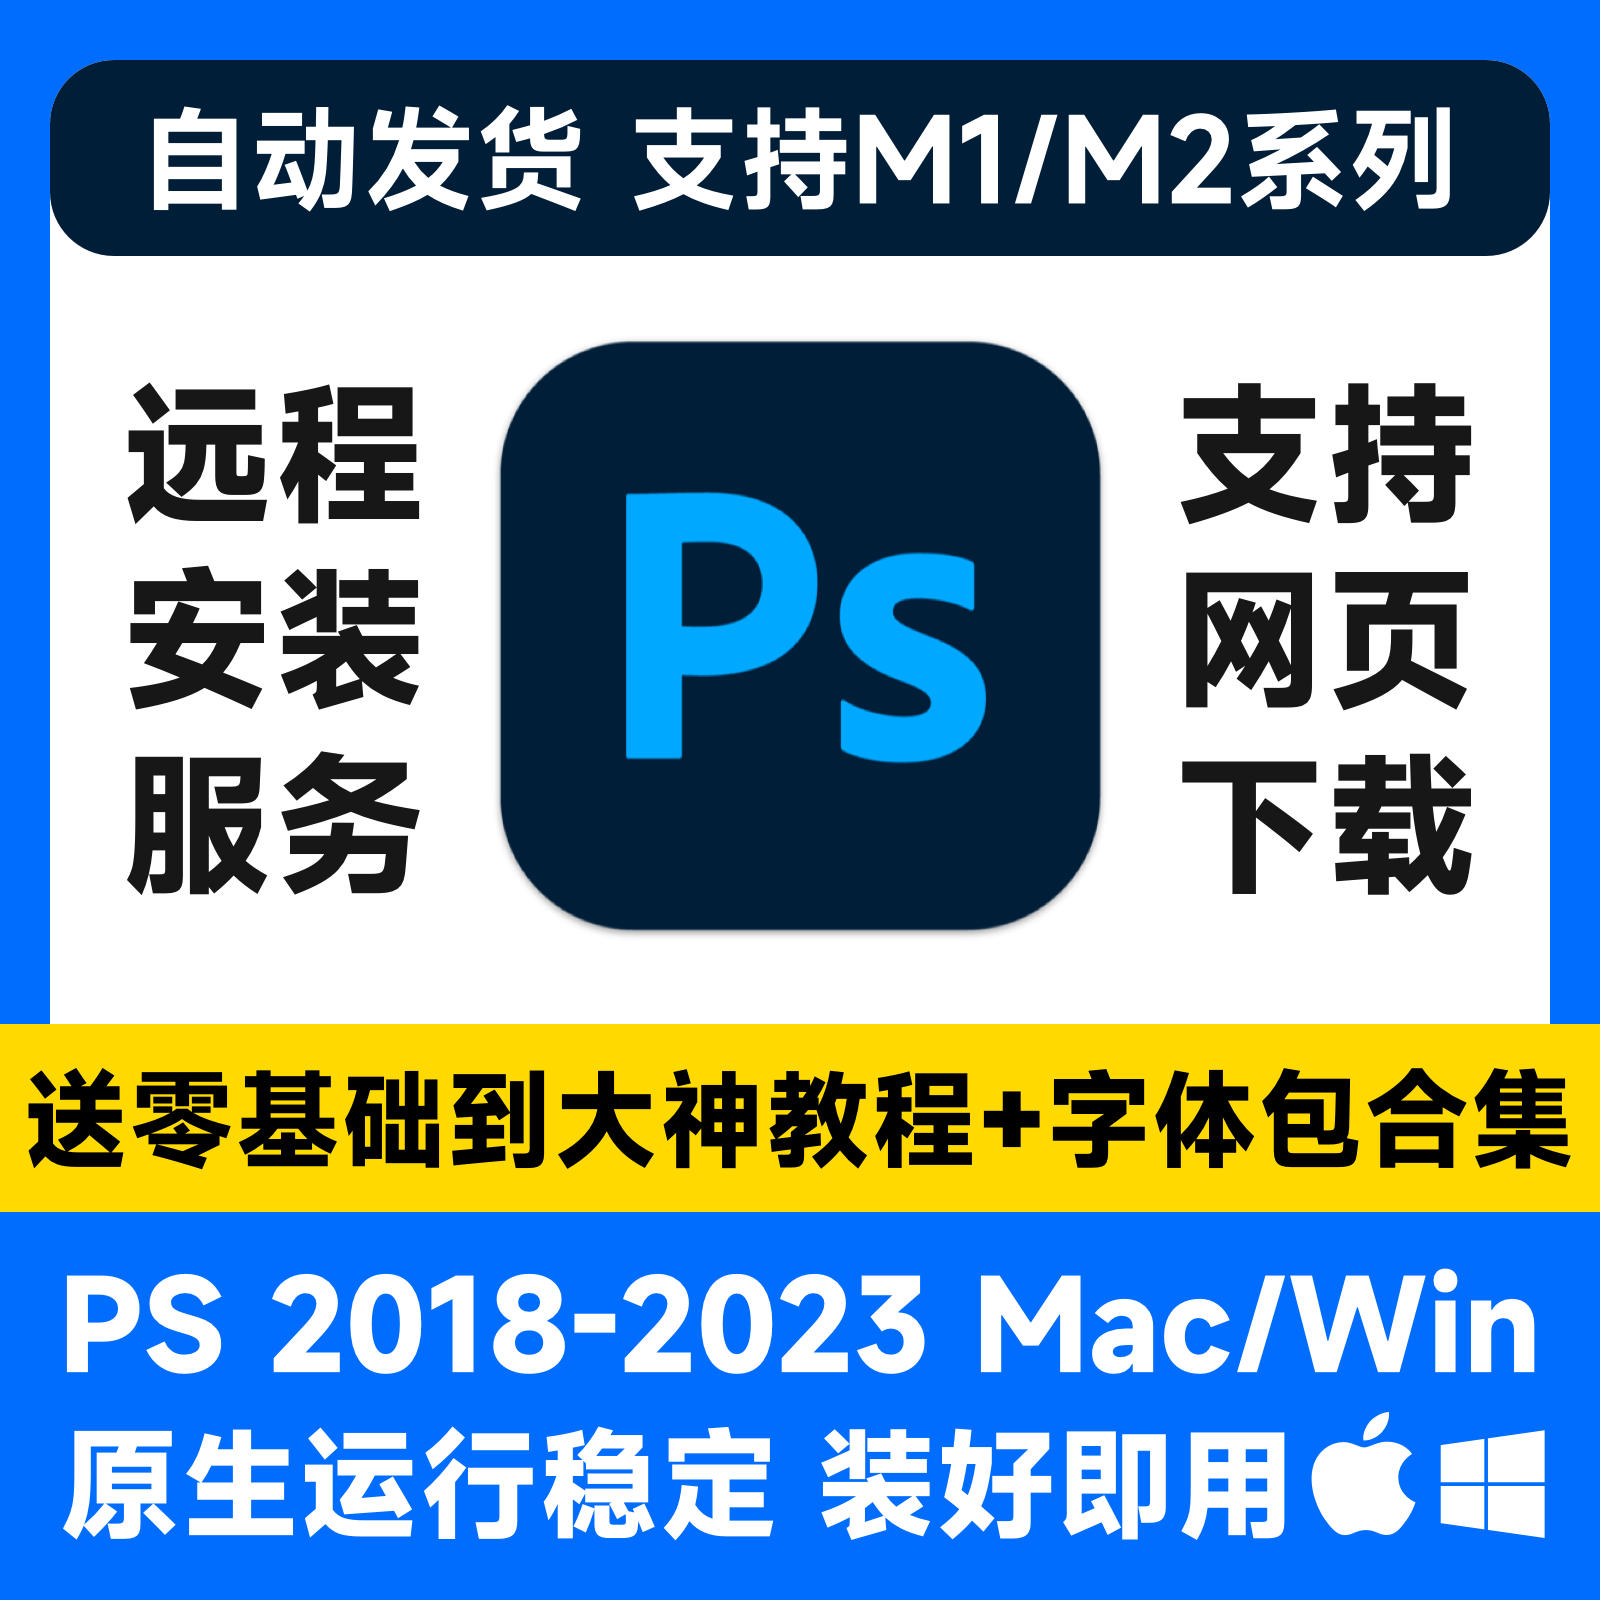 PS2023中文Photoshop苹果Mac/WinPS远程安装平面设计教程修图素材